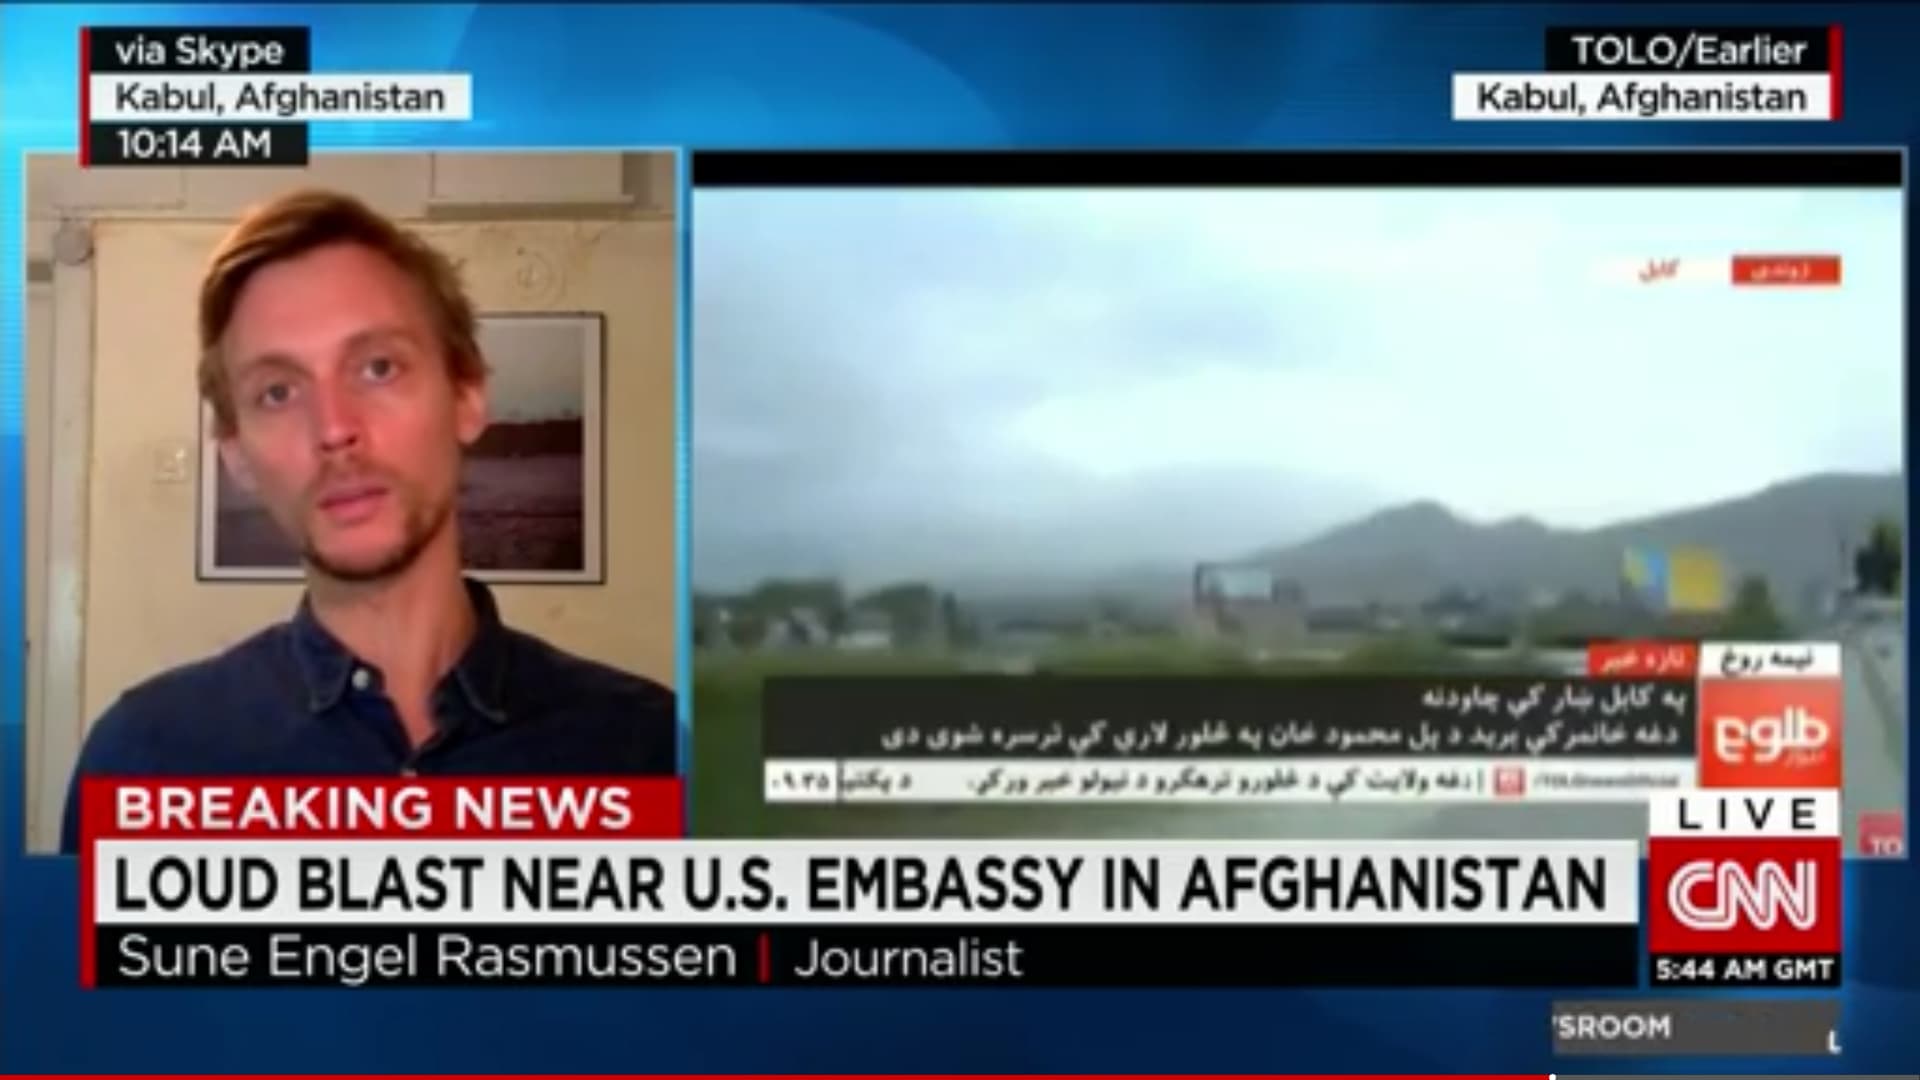 مصادر دبلوماسية لـCNN: هجوم انتحاري قرب السفارة الأمريكية بأفغانستان و"طالبان" تزعم المسؤولية